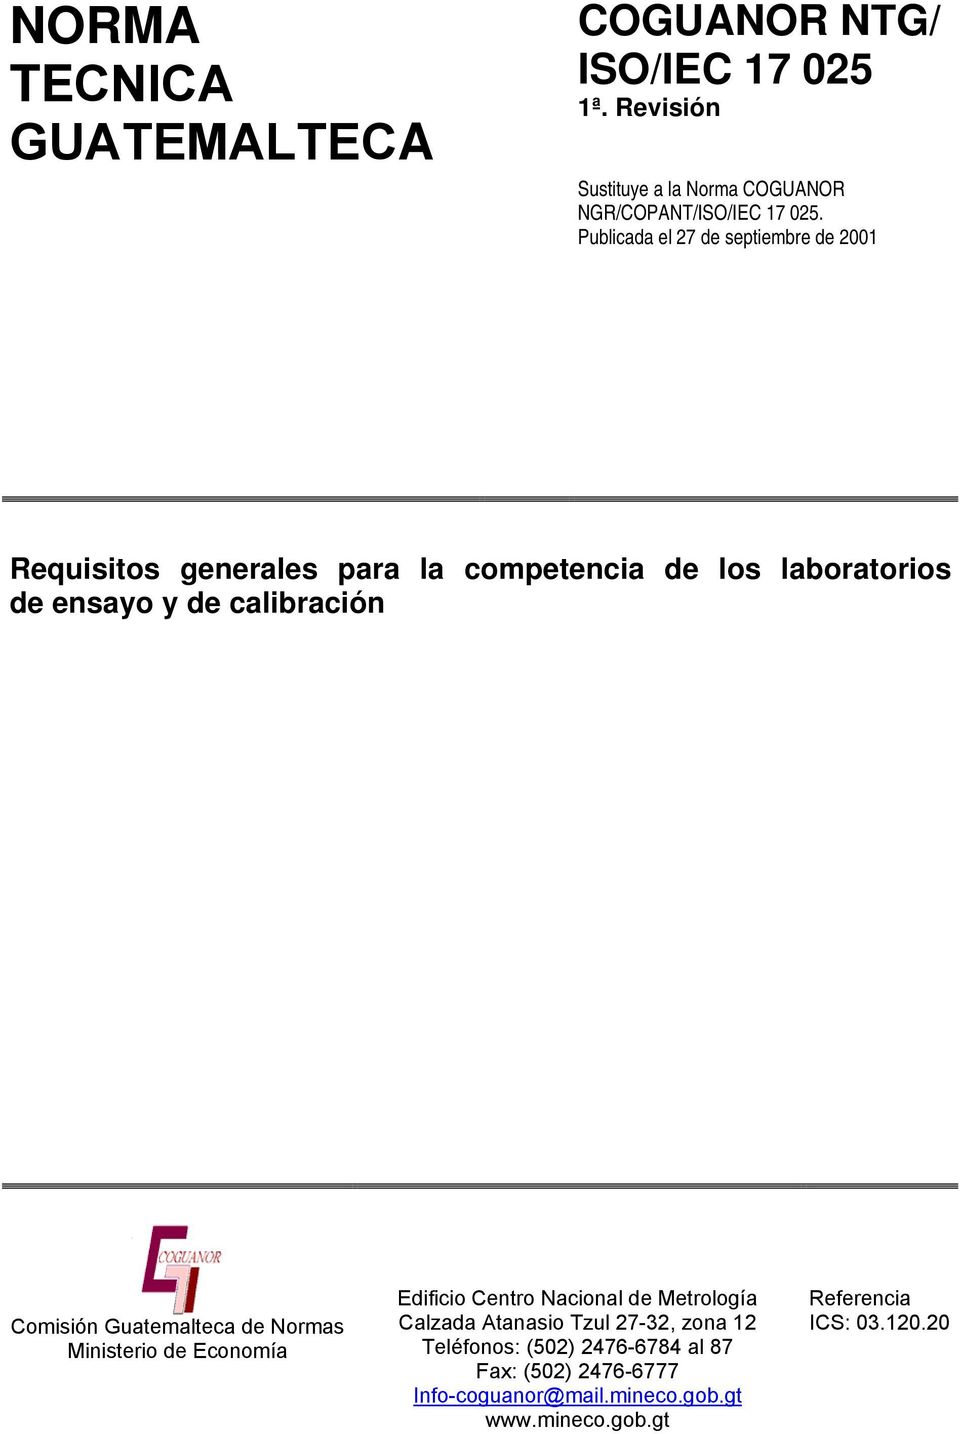 Comisión Guatemalteca de Normas Ministerio de Economía Edificio Centro Nacional de Metrología Calzada Atanasio Tzul 27-32, zona